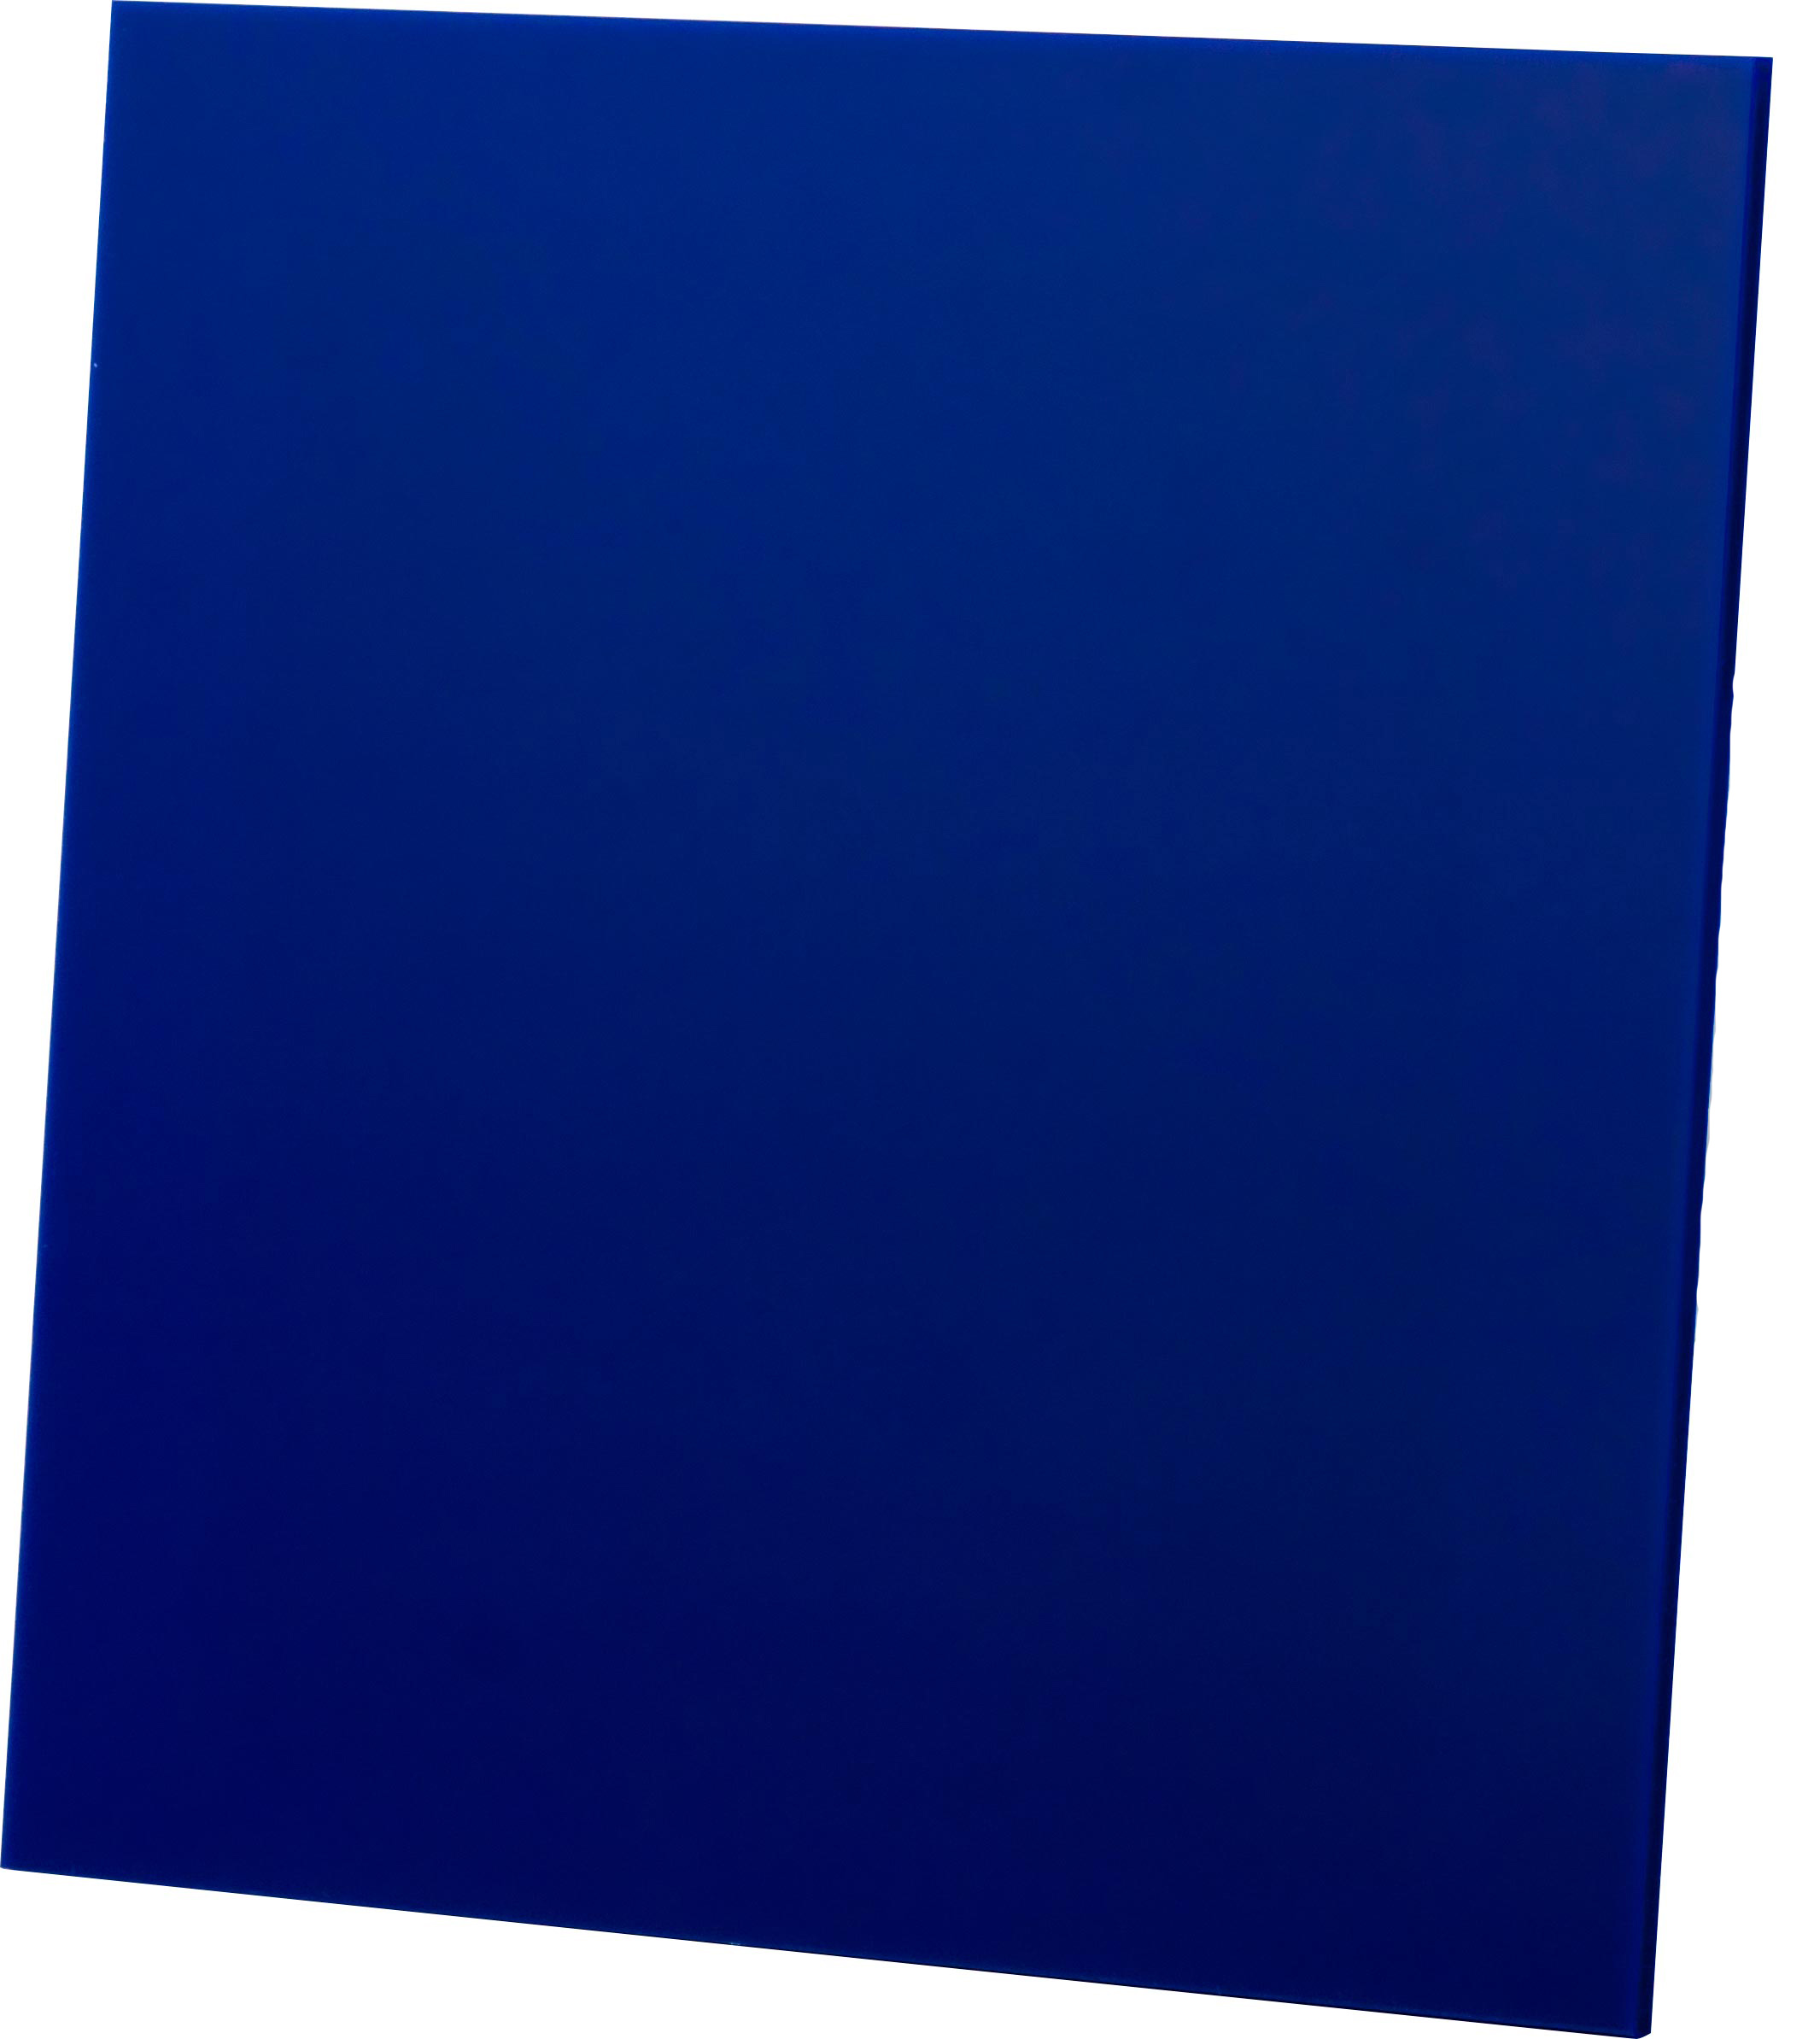 Кришка для вентилятора AirRoxy dRim Plexi блакитний (01-166)